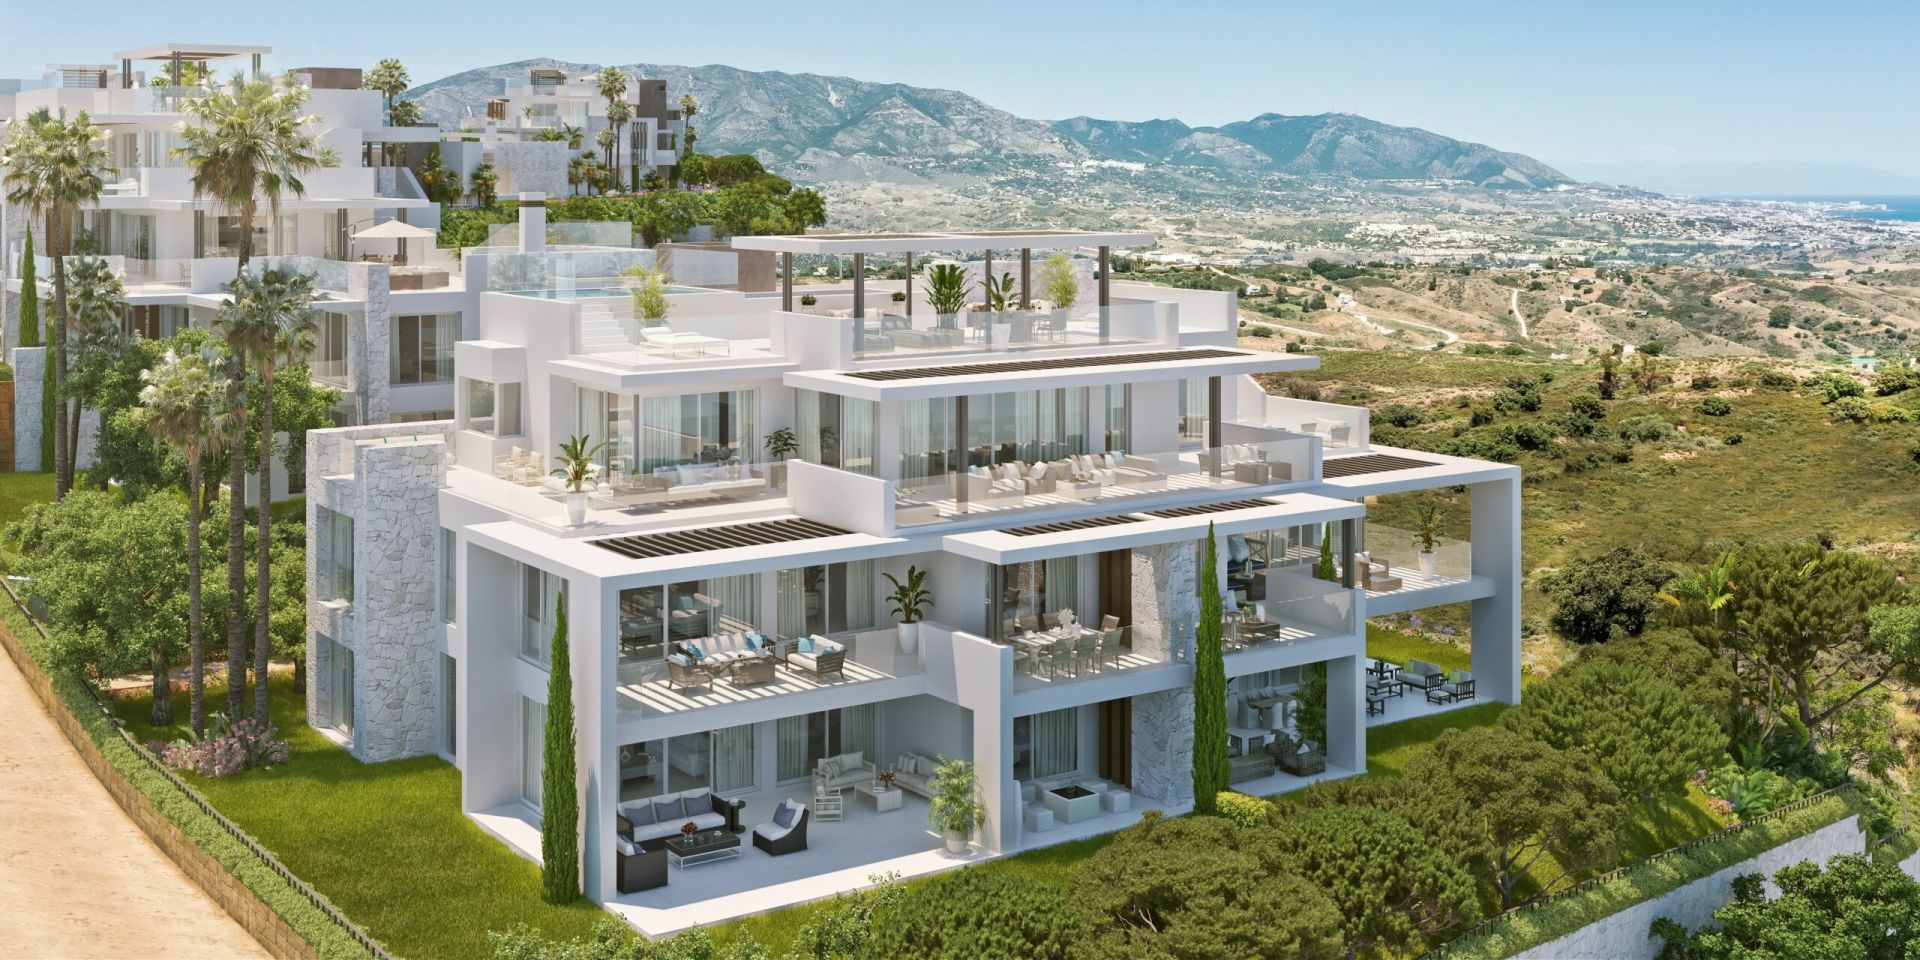 3 bedroom Penthouse with panoramic views | Engel & Völkers Marbella